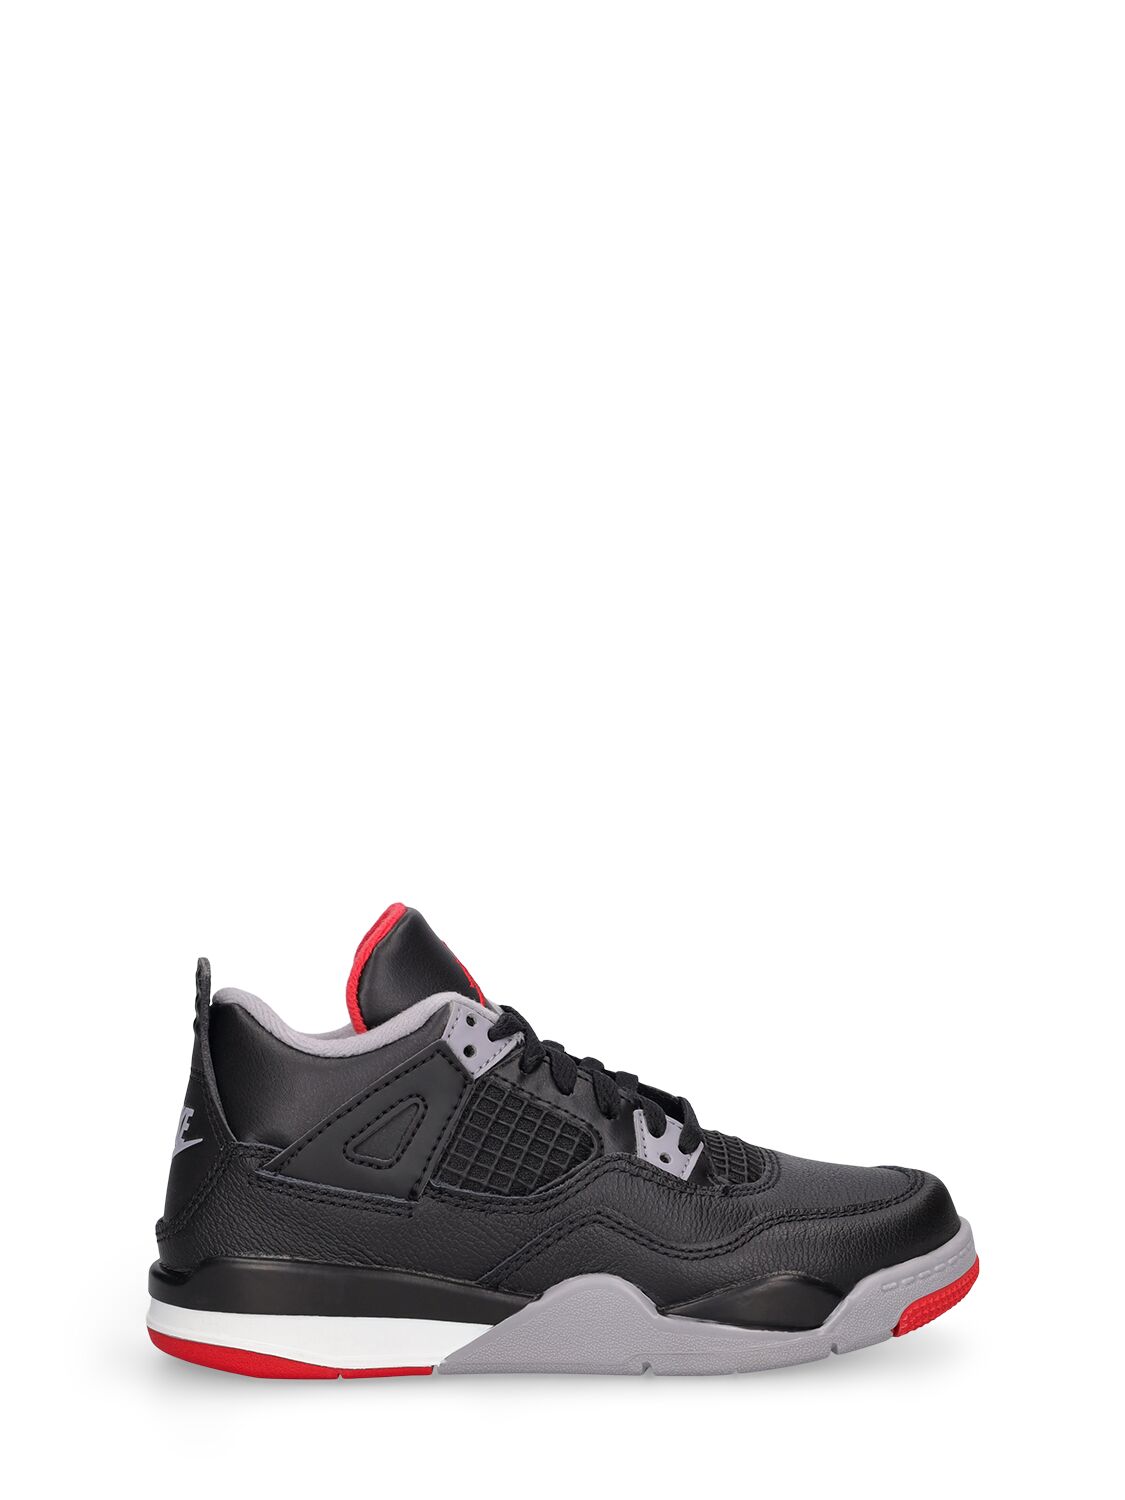 Image of Air Jordan 4 Retro Sneakers